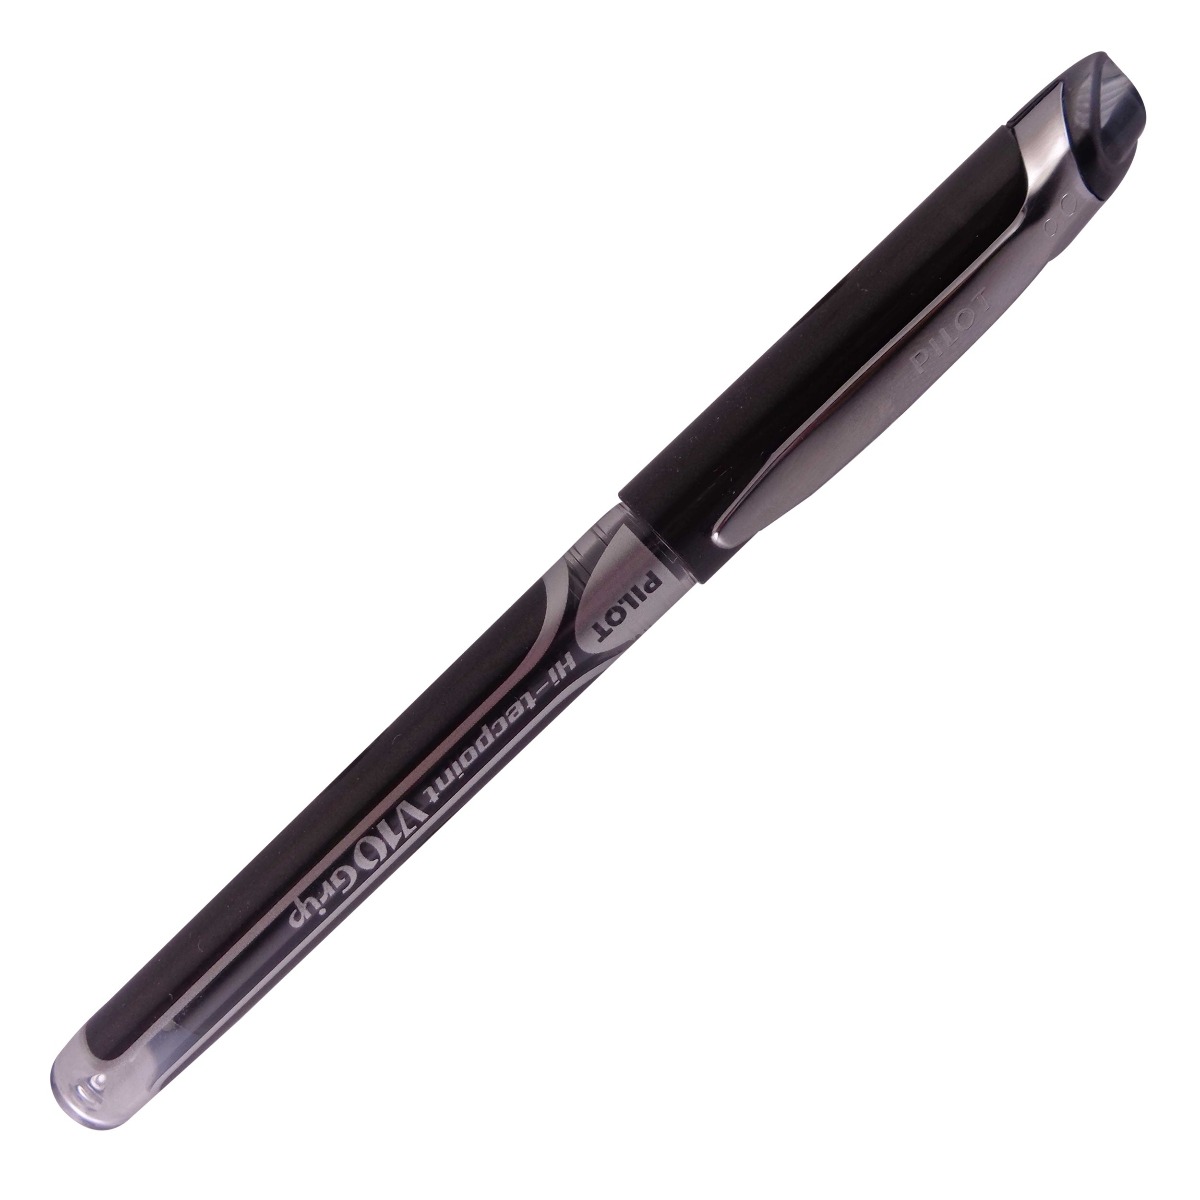 Pilot V10 grip Model: 14842 Black color body with silver clip Black ink 1.0 mm tip cap type Roller ball pen